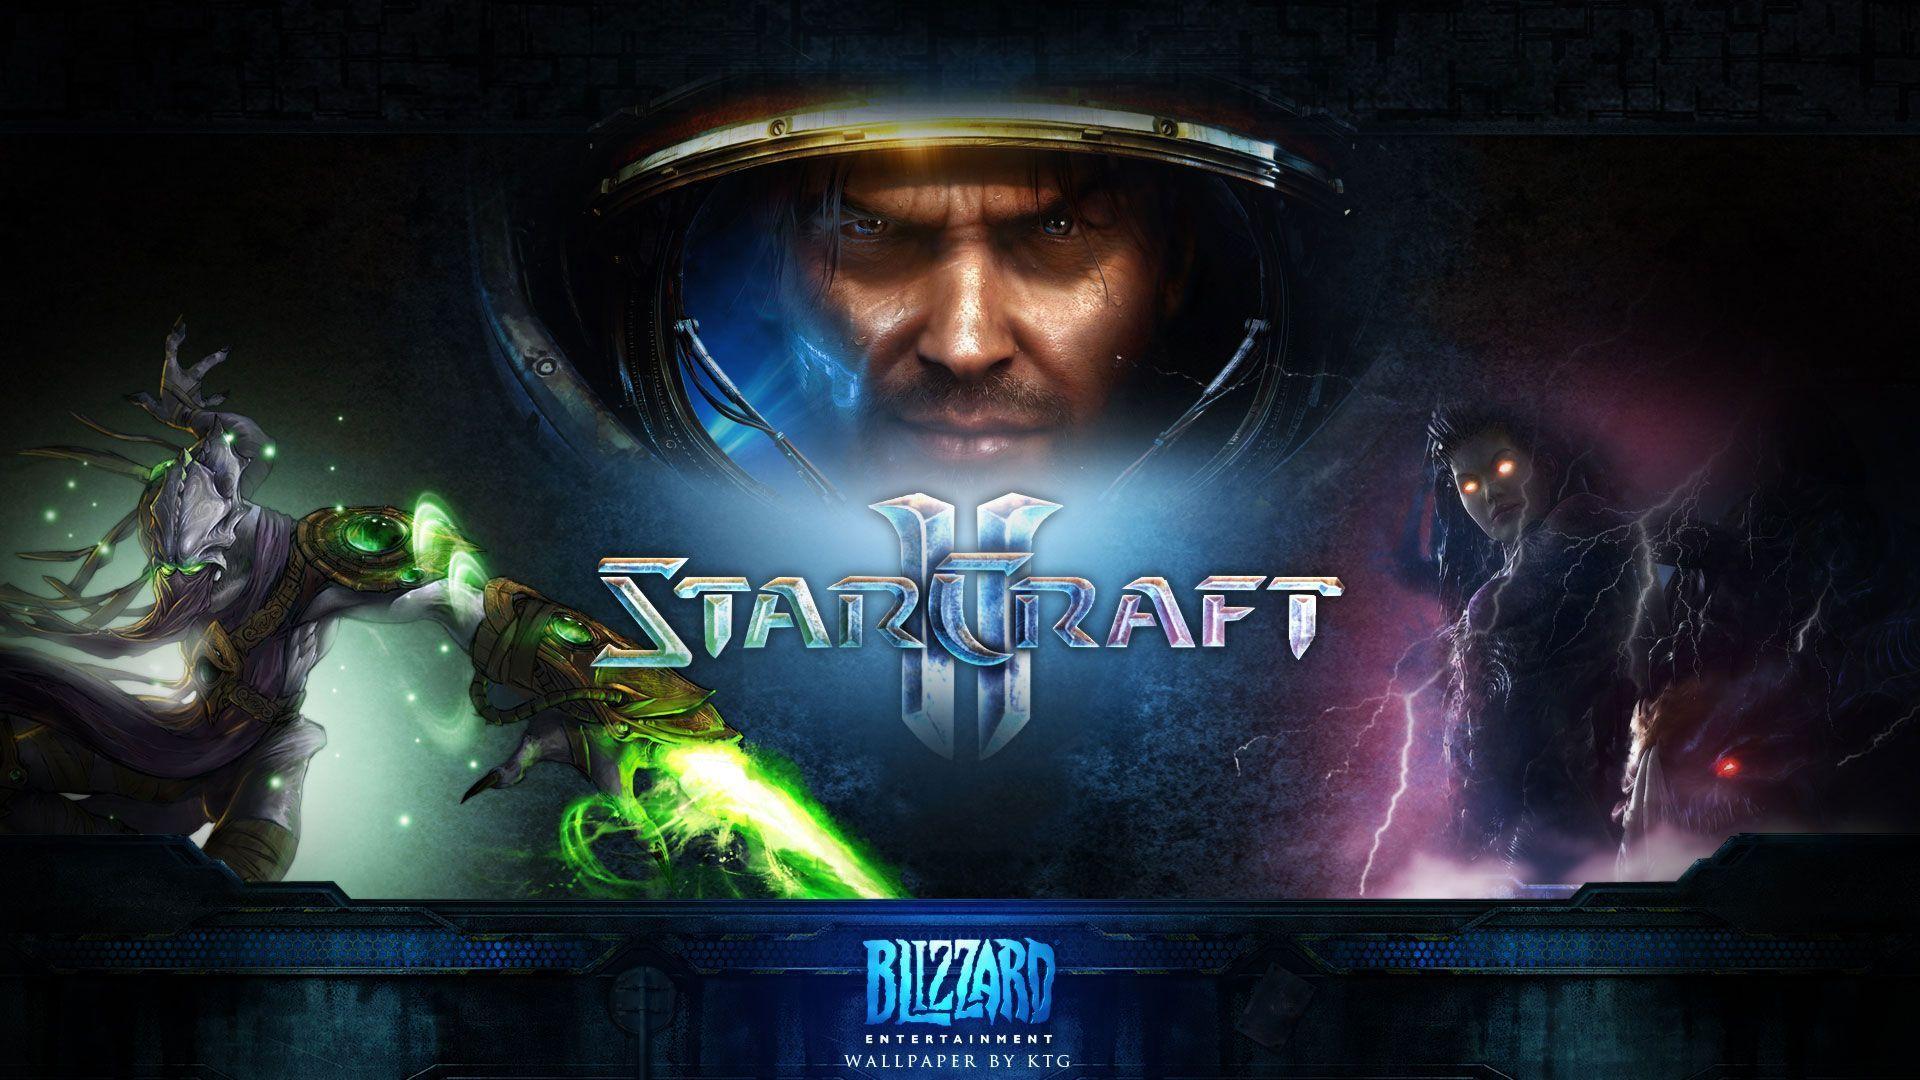 Fondos de pantalla de StarCraft 2. Wallpaper de StarCraft 2